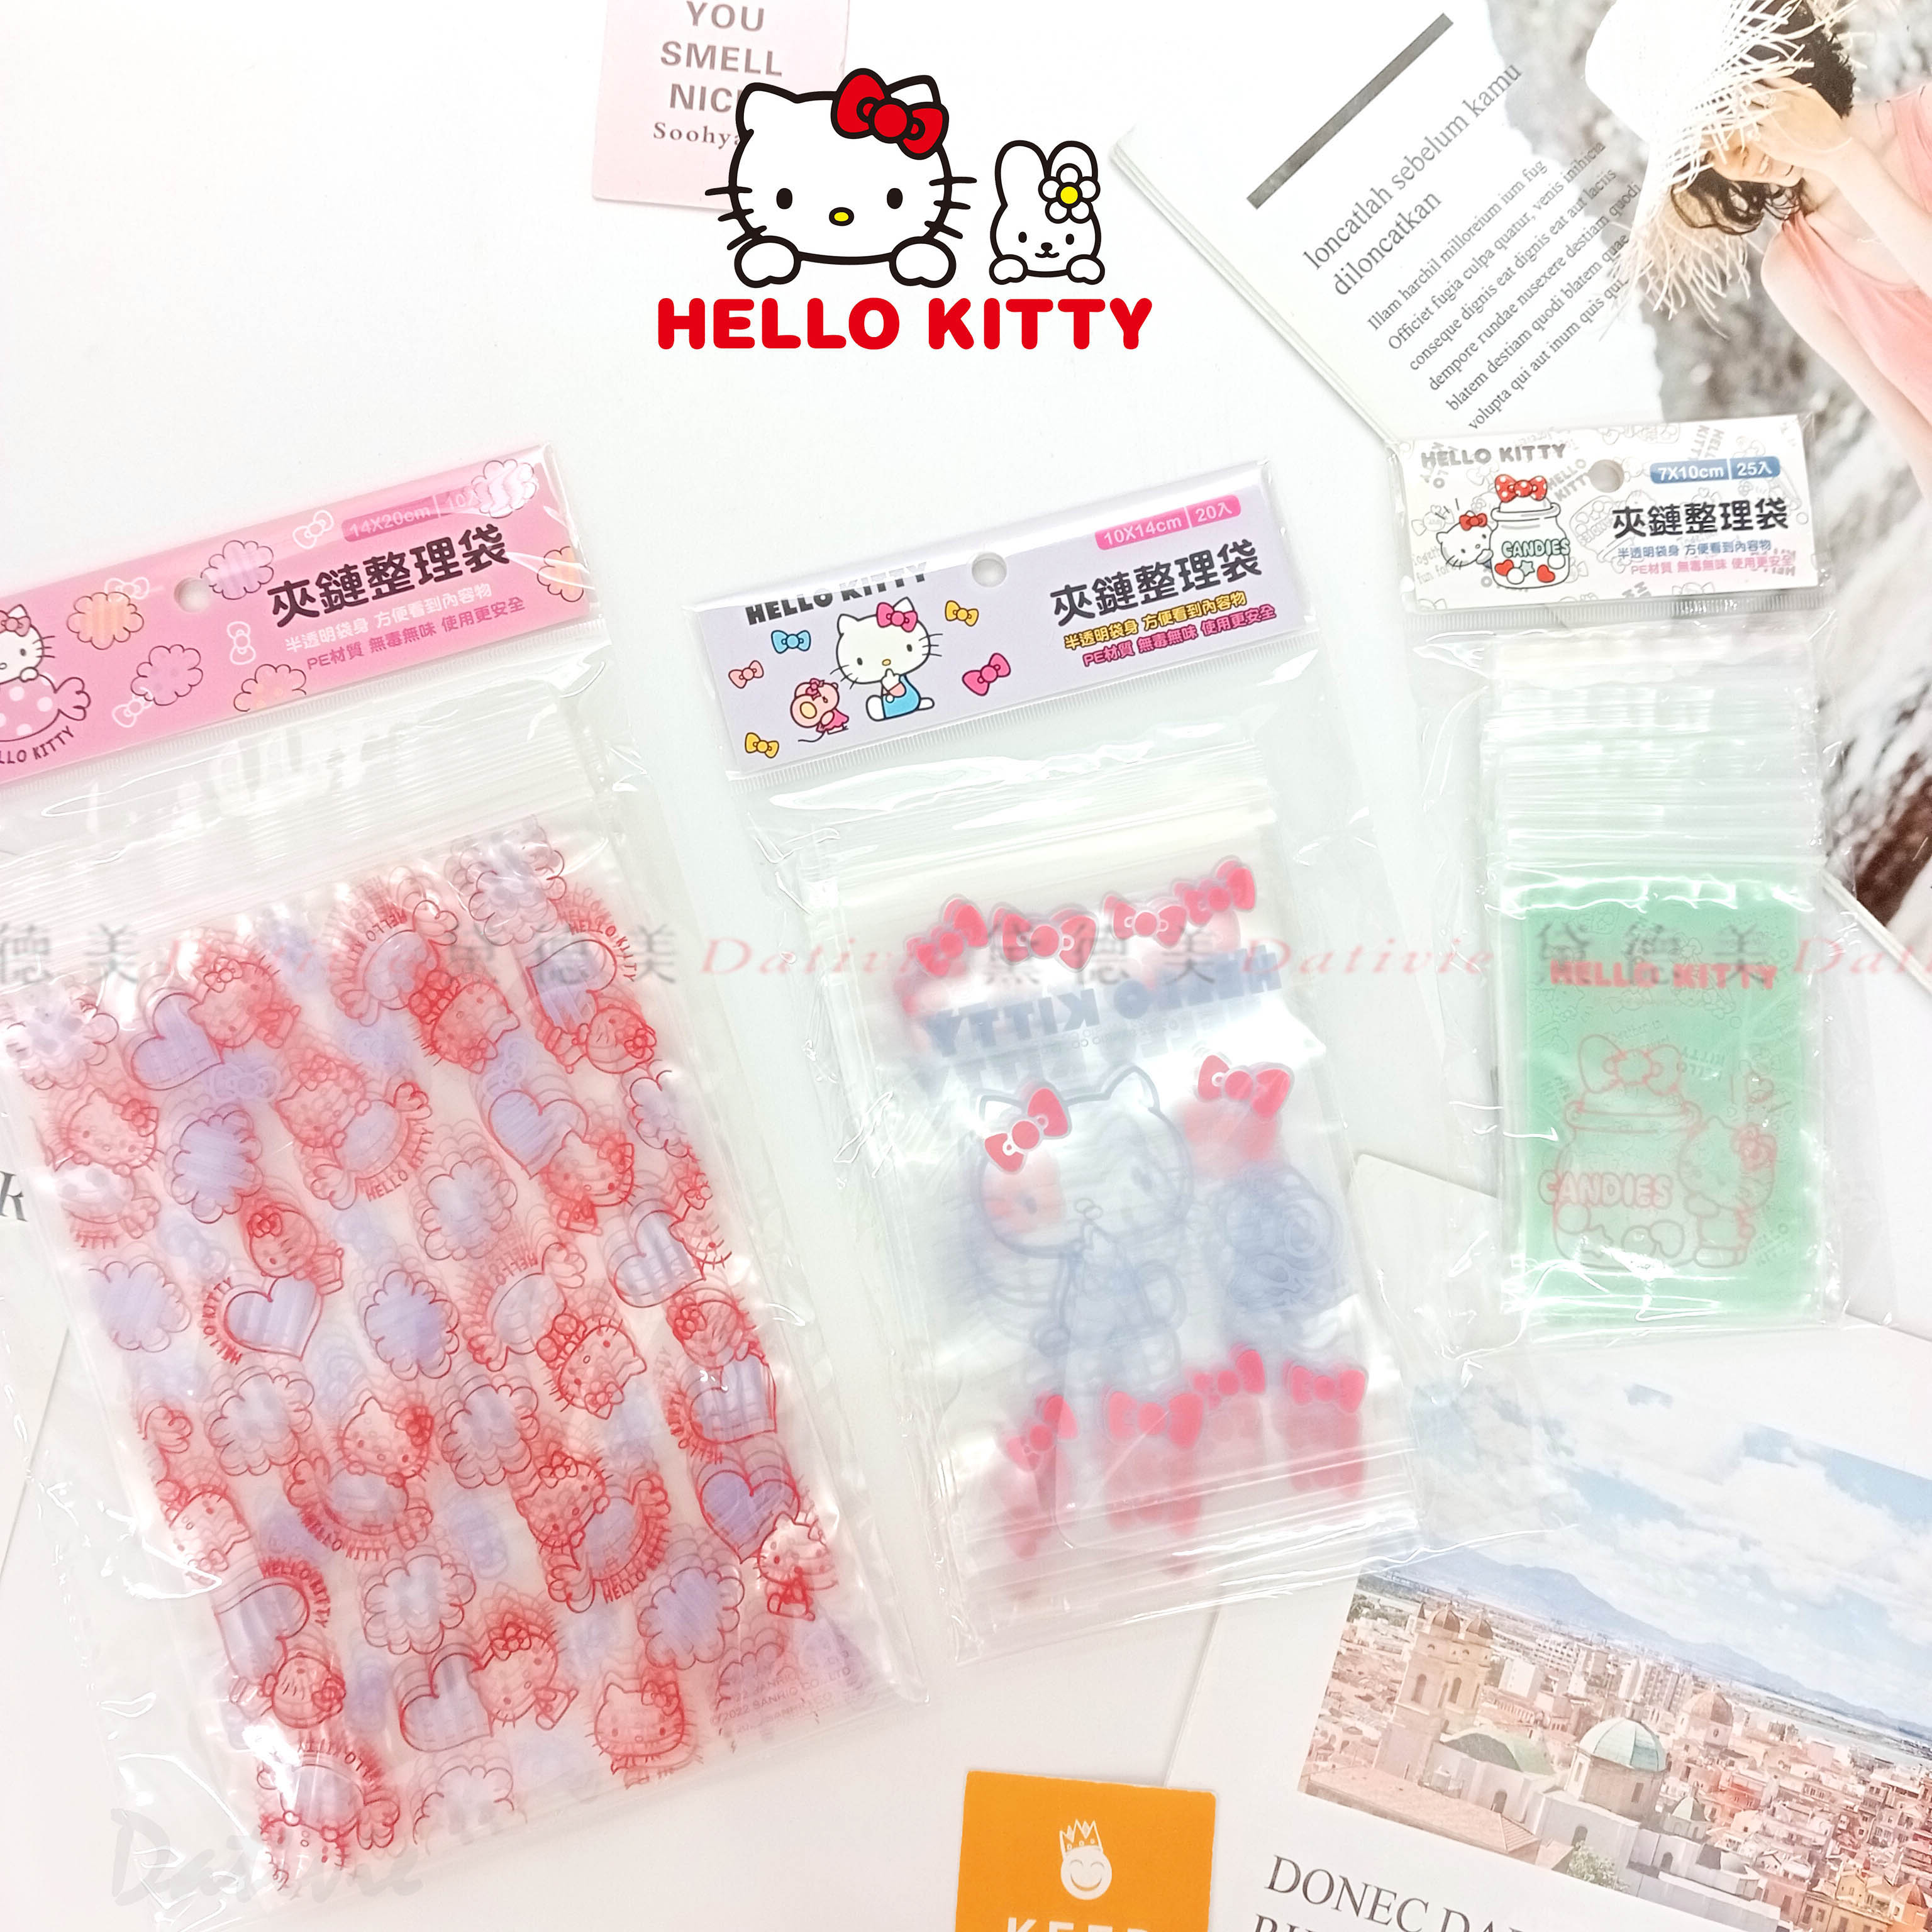 夾鏈袋-XS S L 凱蒂貓 HELLO KITTY 三麗鷗 Sanrio 正版授權